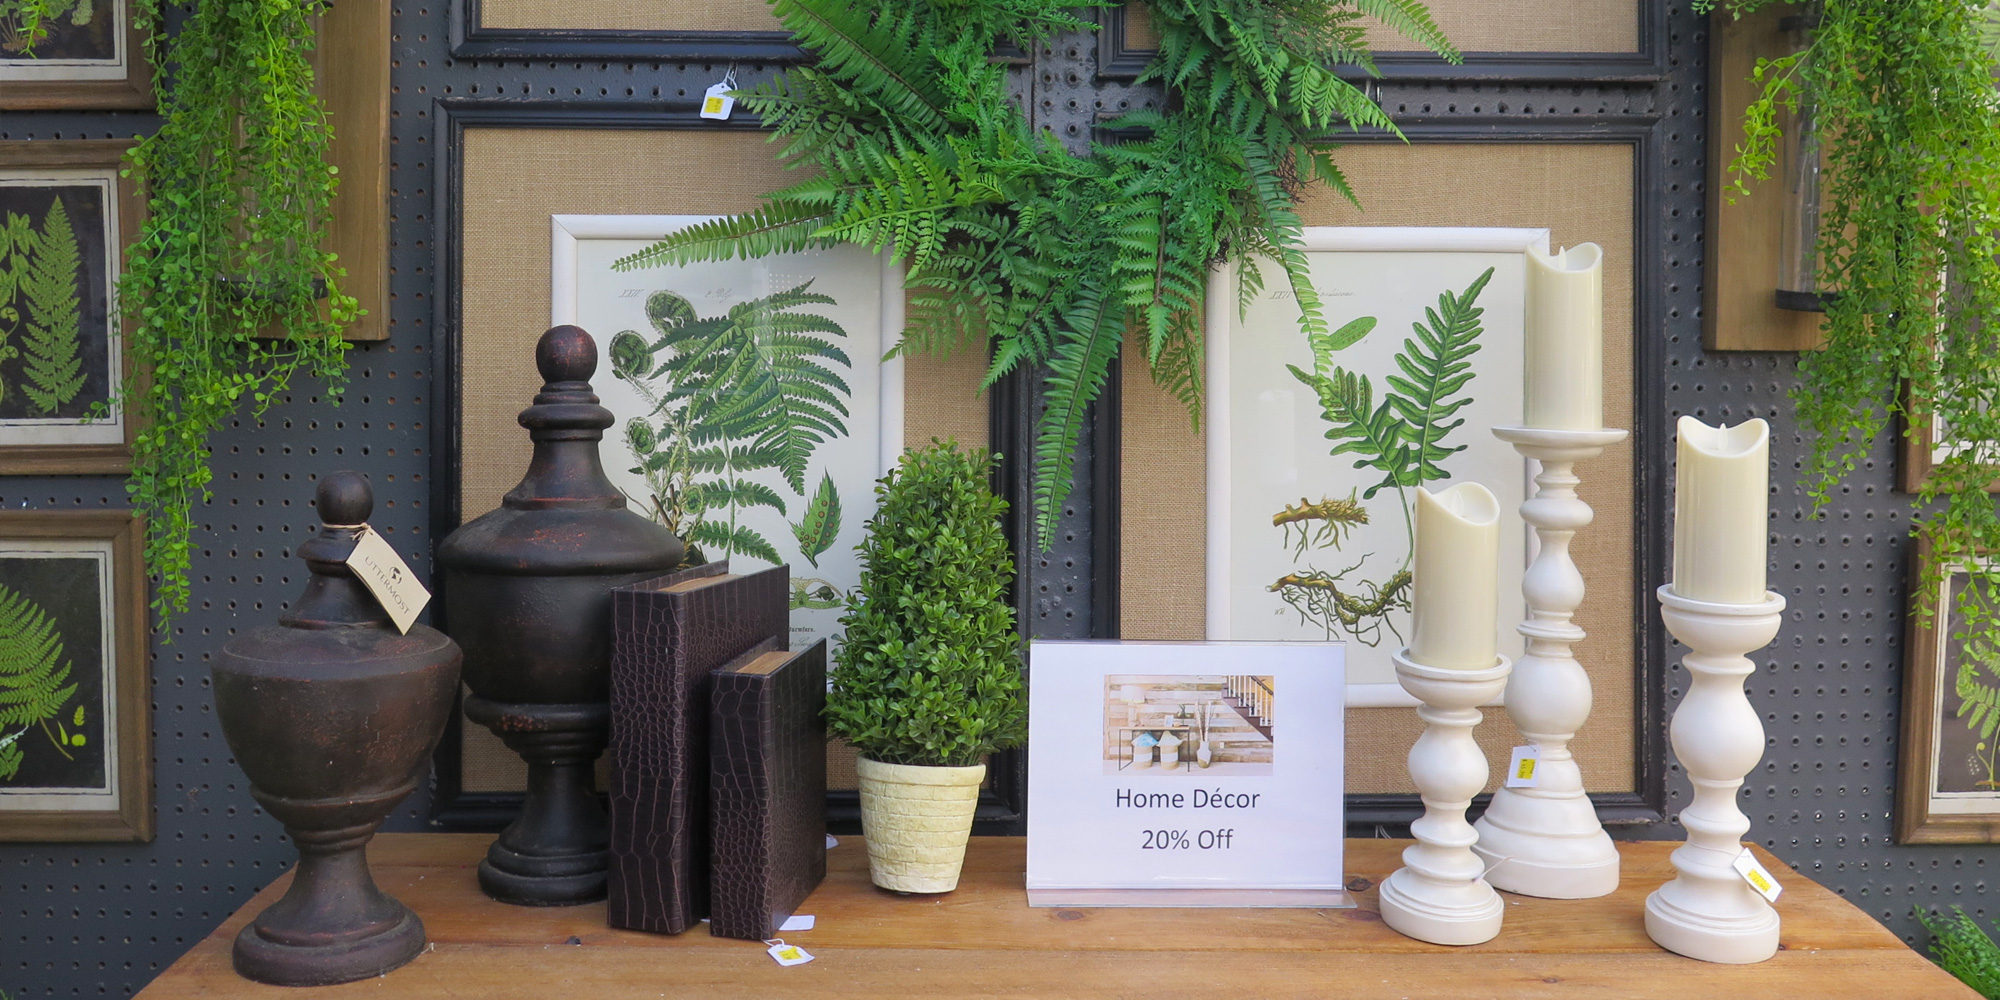 Award Winning Home Decor Outdoor Furniture Garden Center And